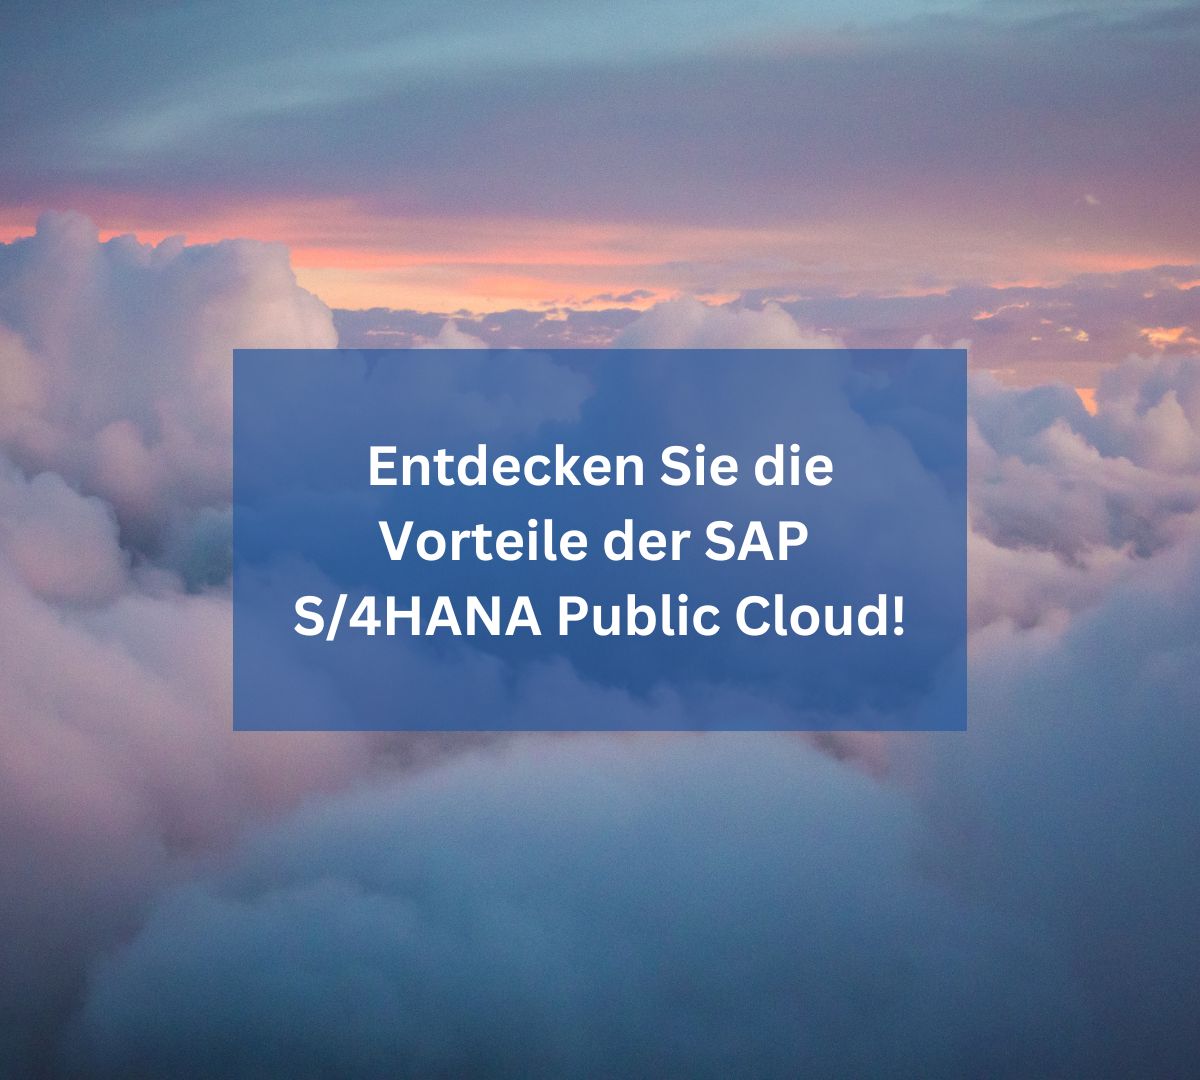 Entdecken Sie die Vorteile der SAP S/4HANA Public Cloud!